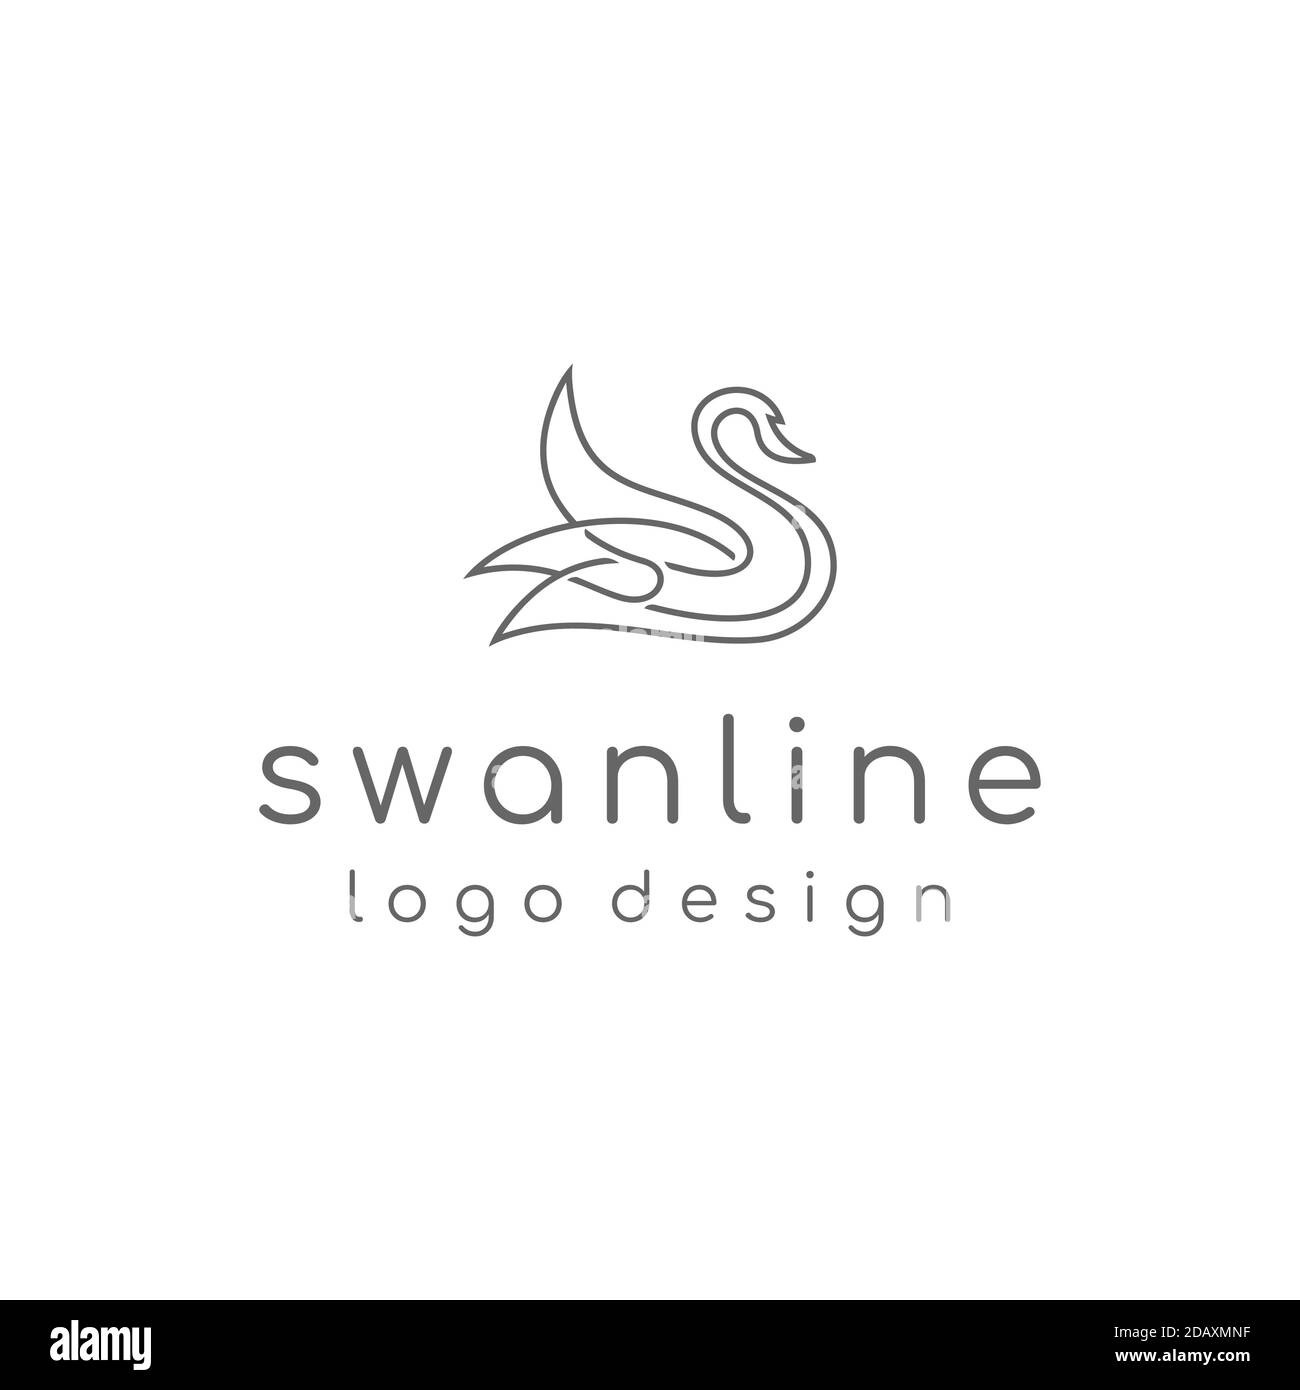 line art swan logo design vector Stock Vector